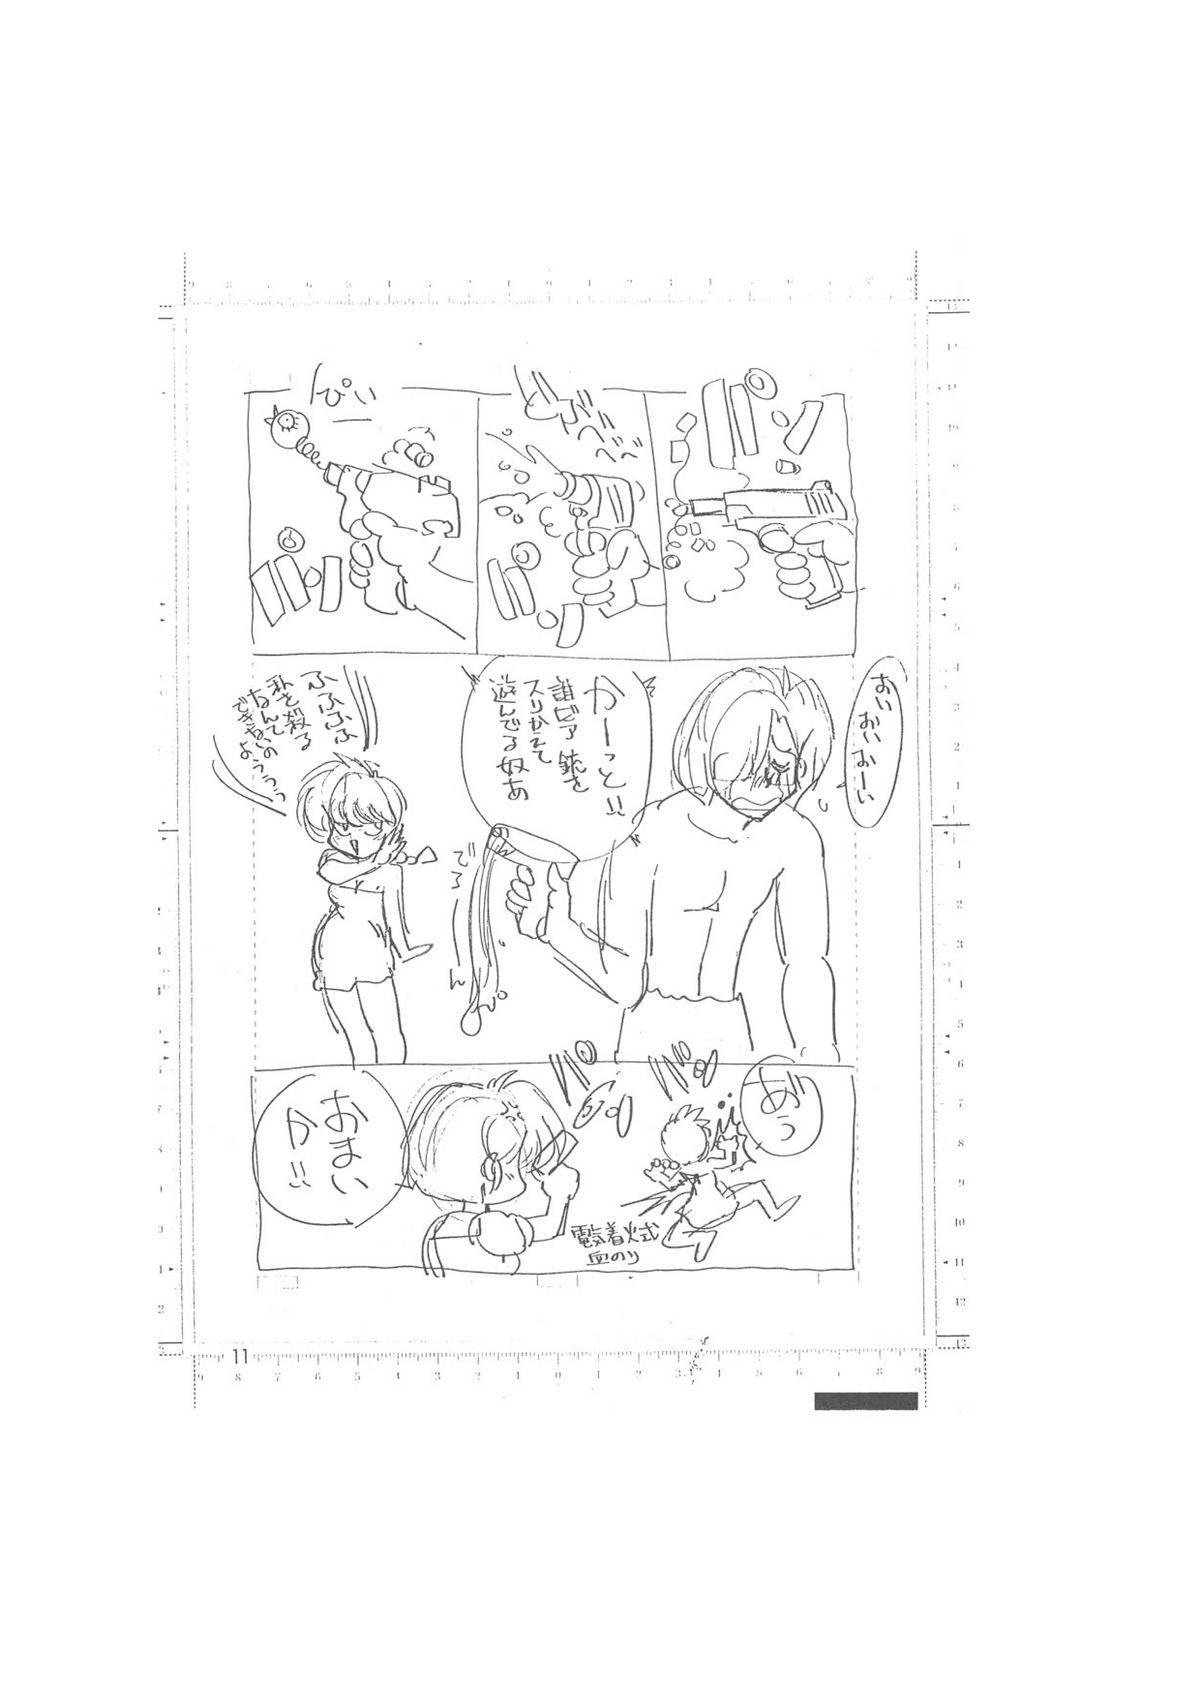 メイキング・オブ・『真・最悪的悲劇』 - A Ranma Doujin Sketch by Dark Zone 10